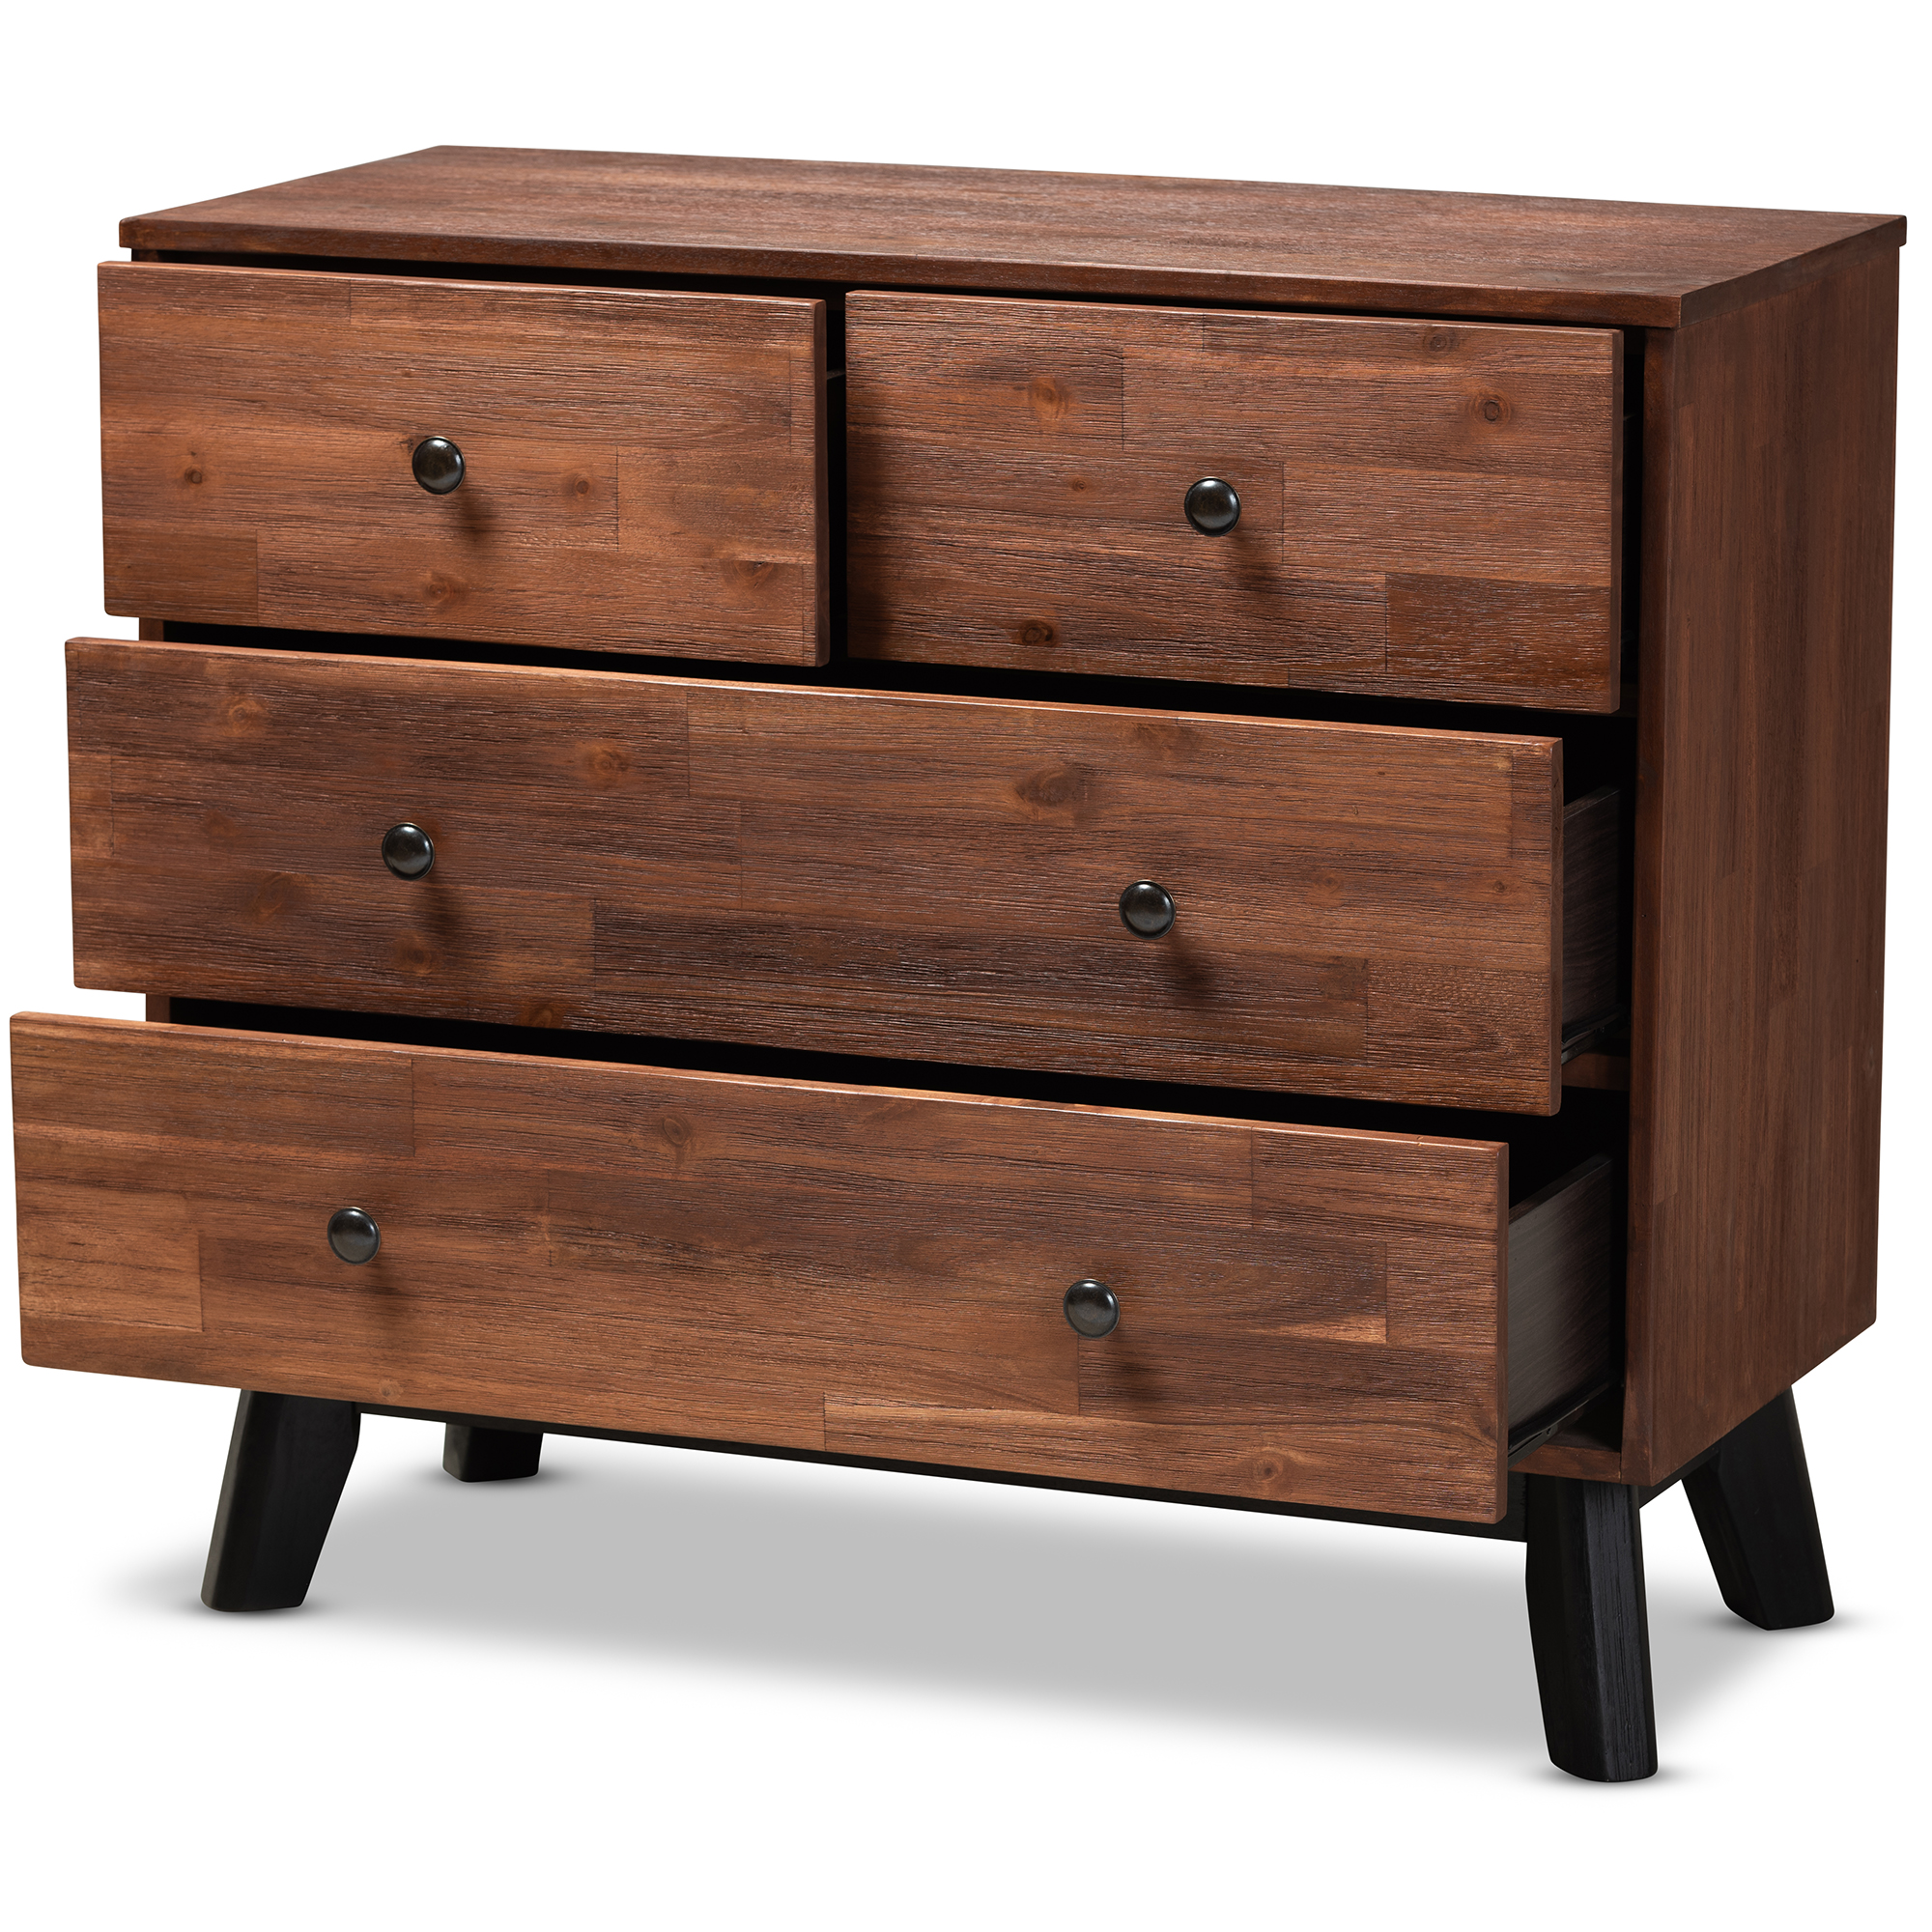 Black Oak Finished 4 Drawer Wood Dresser, Black Wood Dresser